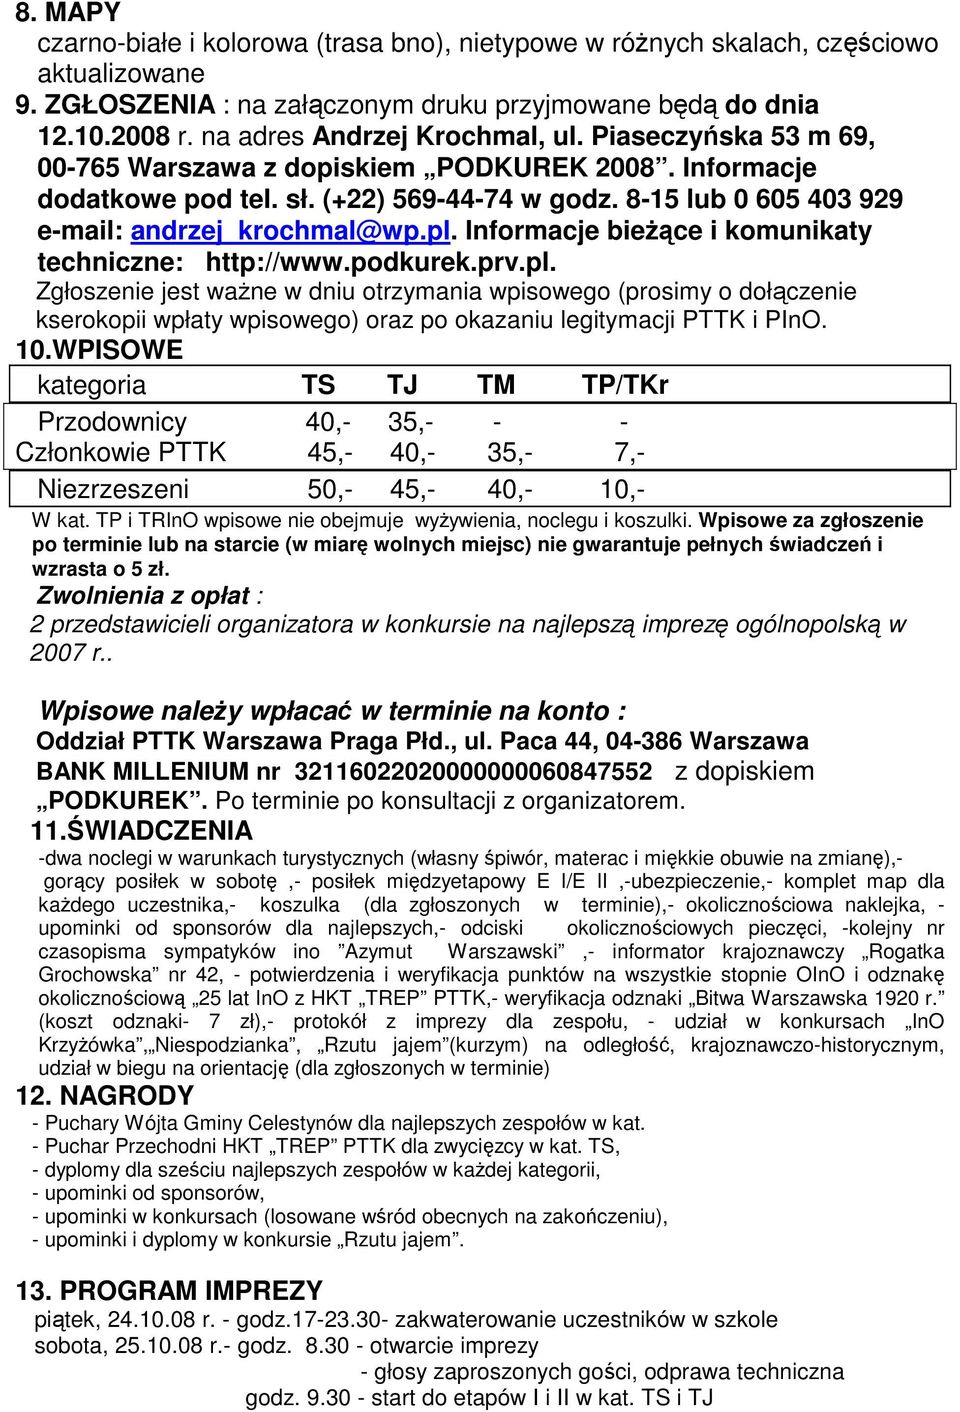 8-15 lub 0 605 403 929 e-mail: andrzej_krochmal@wp.pl. Informacje bieŝące i komunikaty techniczne: http://www.podkurek.prv.pl. Zgłoszenie jest waŝne w dniu otrzymania wpisowego (prosimy o dołączenie kserokopii wpłaty wpisowego) oraz po okazaniu legitymacji PTTK i PInO.